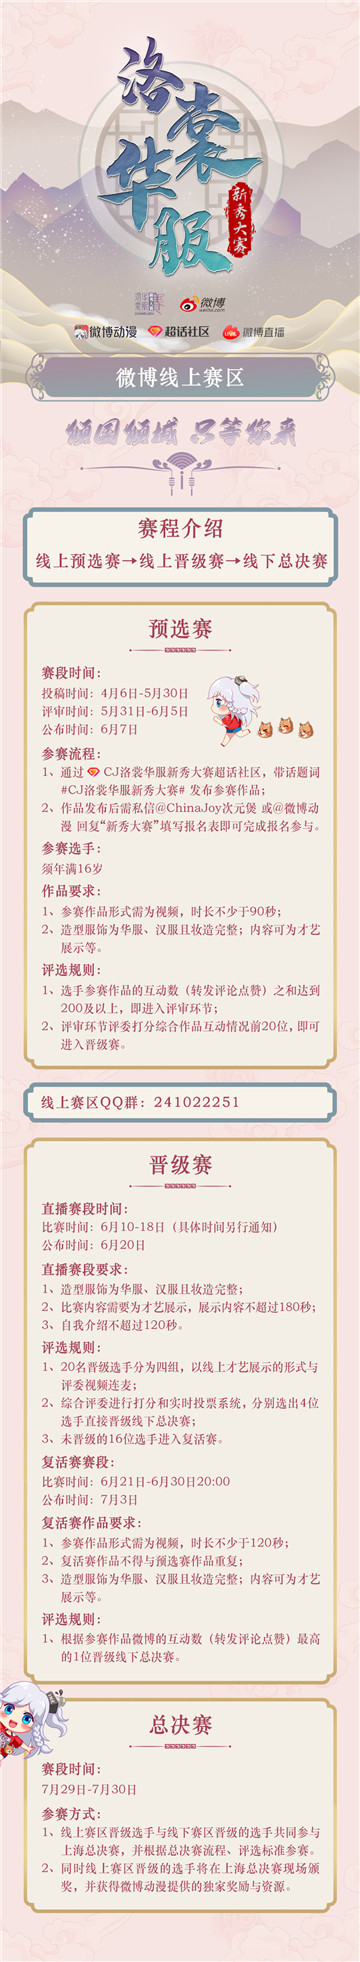 2022年ChinaJoy洛裳华服·新秀大赛 微博线上赛区正式开赛